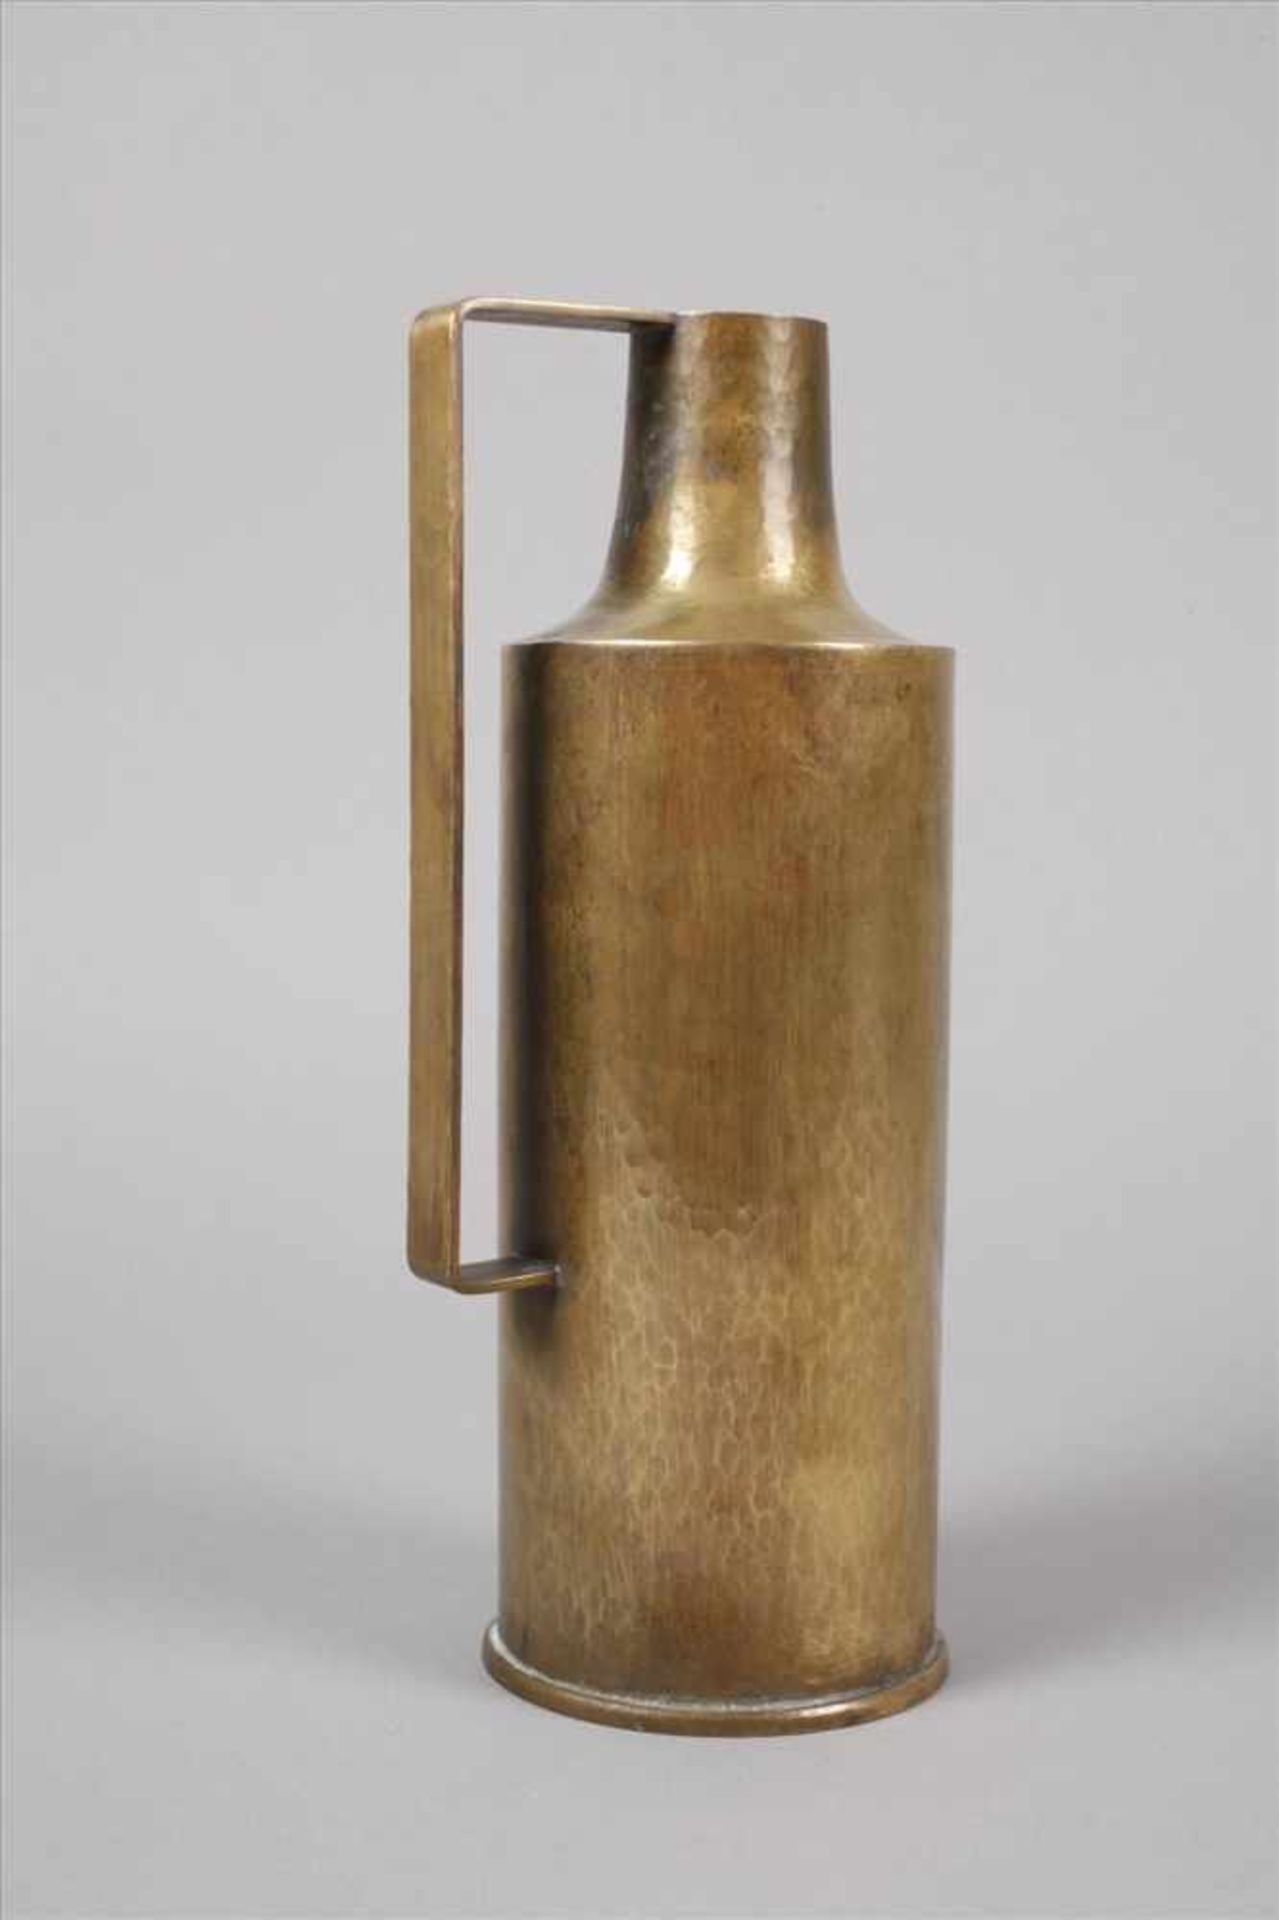 Messingkannewohl 1930er Jahre, ungemarkt, Messing handgetrieben, innen verzinnt, Zylinderform mit - Bild 5 aus 5